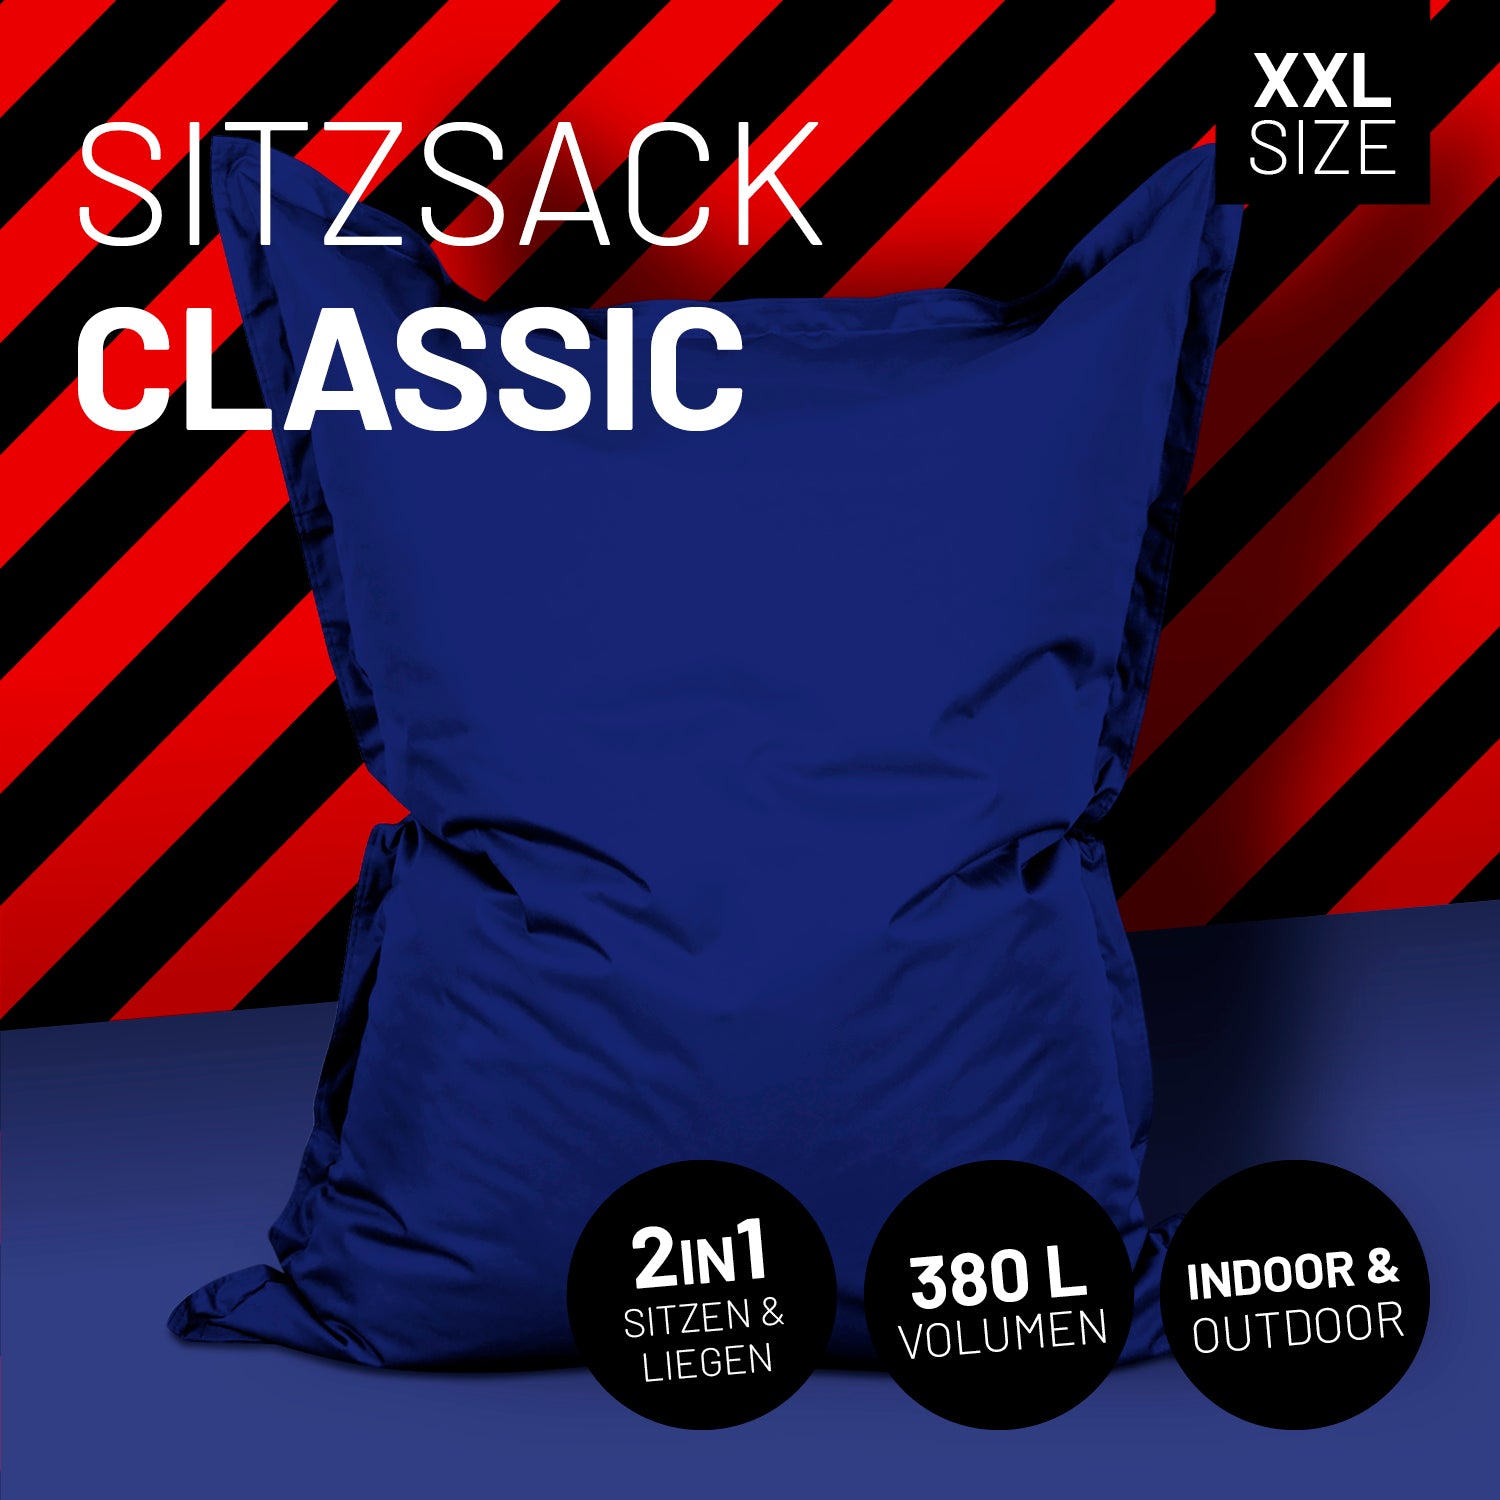 Sitzsack Classic XXL (380 L) - indoor & outdoor - Dunkelblau